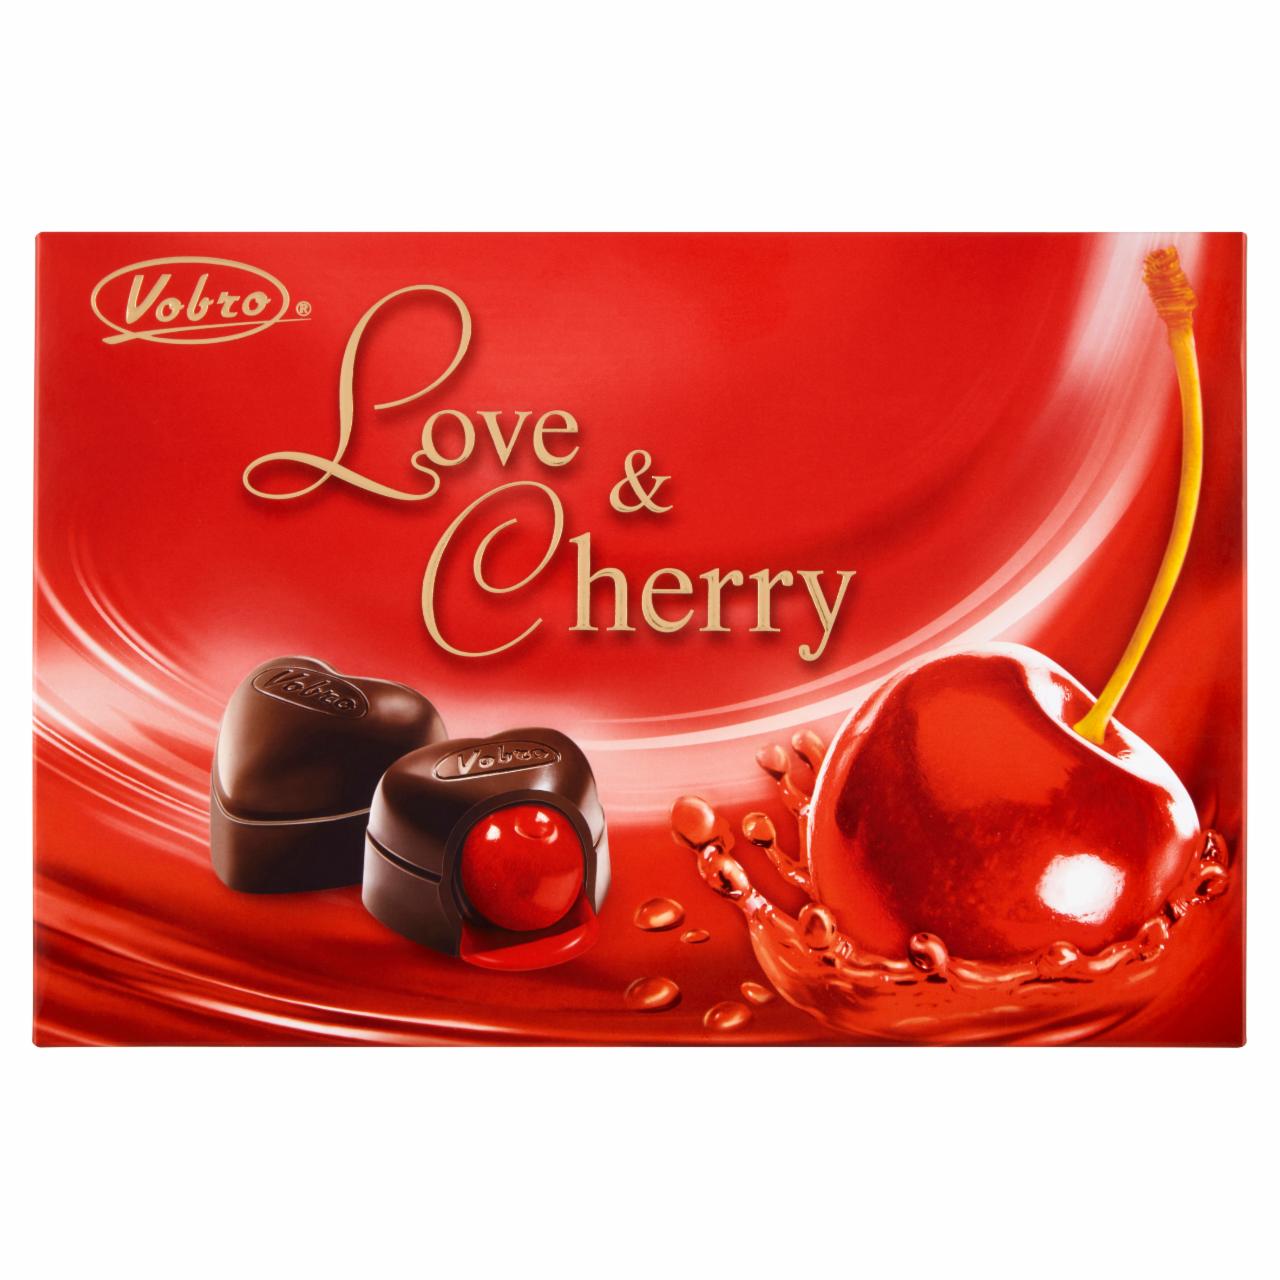 Zdjęcia - Vobro Love & Cherry Czekoladki nadziewane wiśnią w alkoholu 187 g